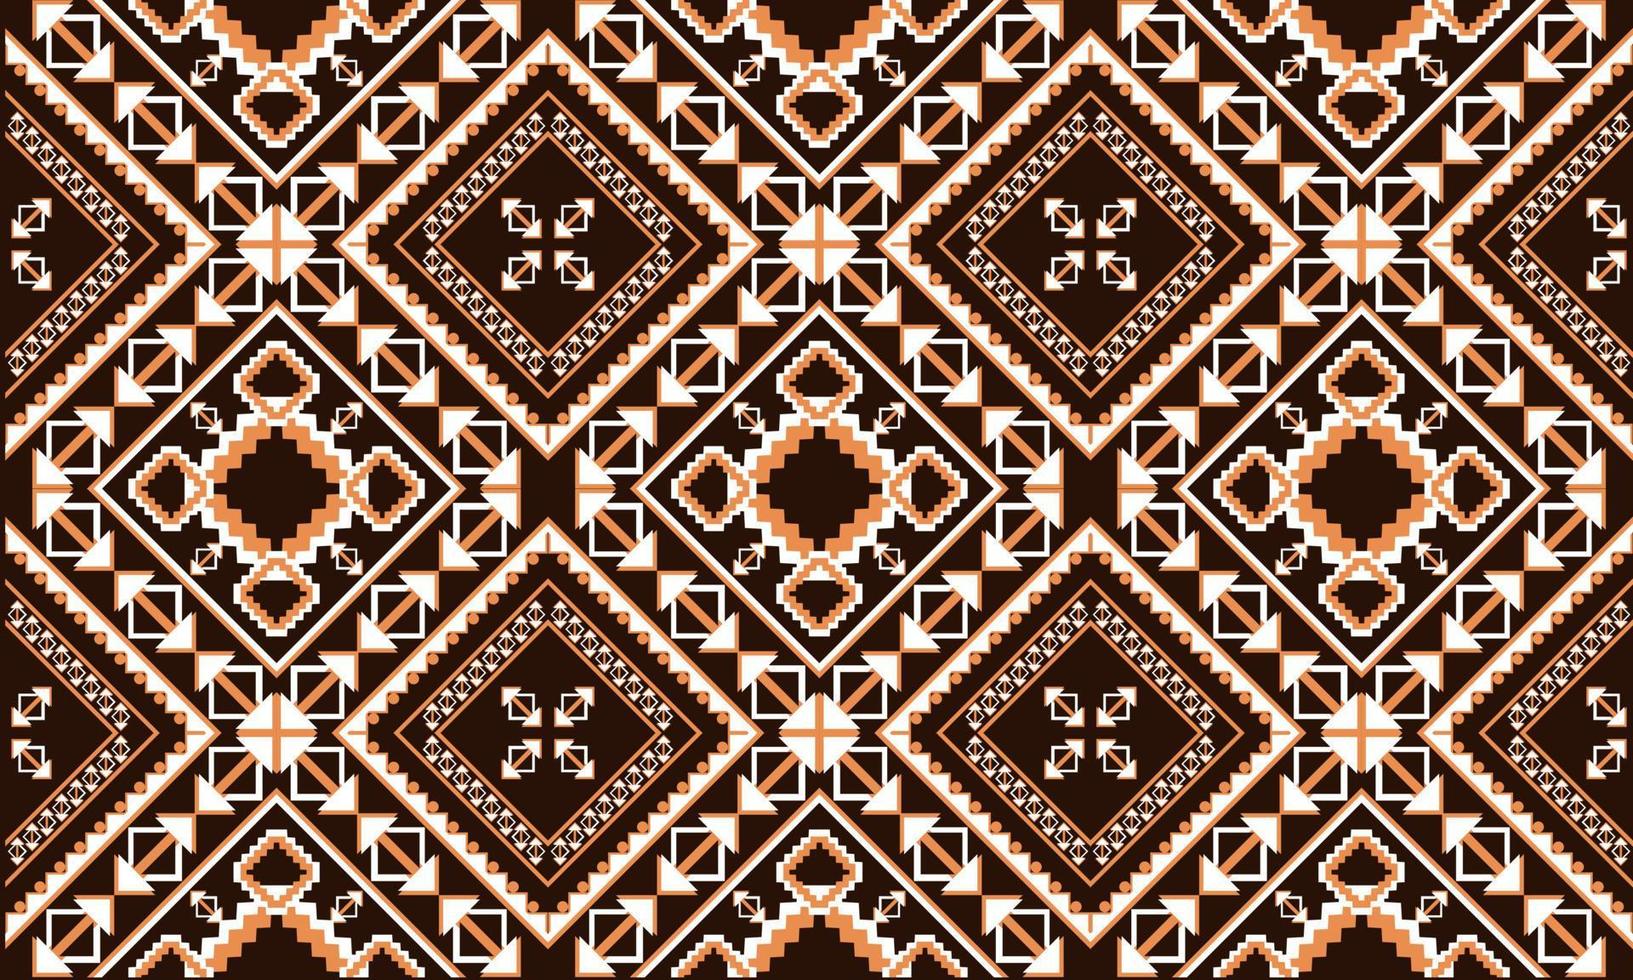 abstrakter ethnischer Ikat-Chevron-Musterhintergrund. ,Teppich,Tapete,Kleidung,Wrapping,Batik,Stoff,Vektorillustration.Embroidery-Stil. vektor